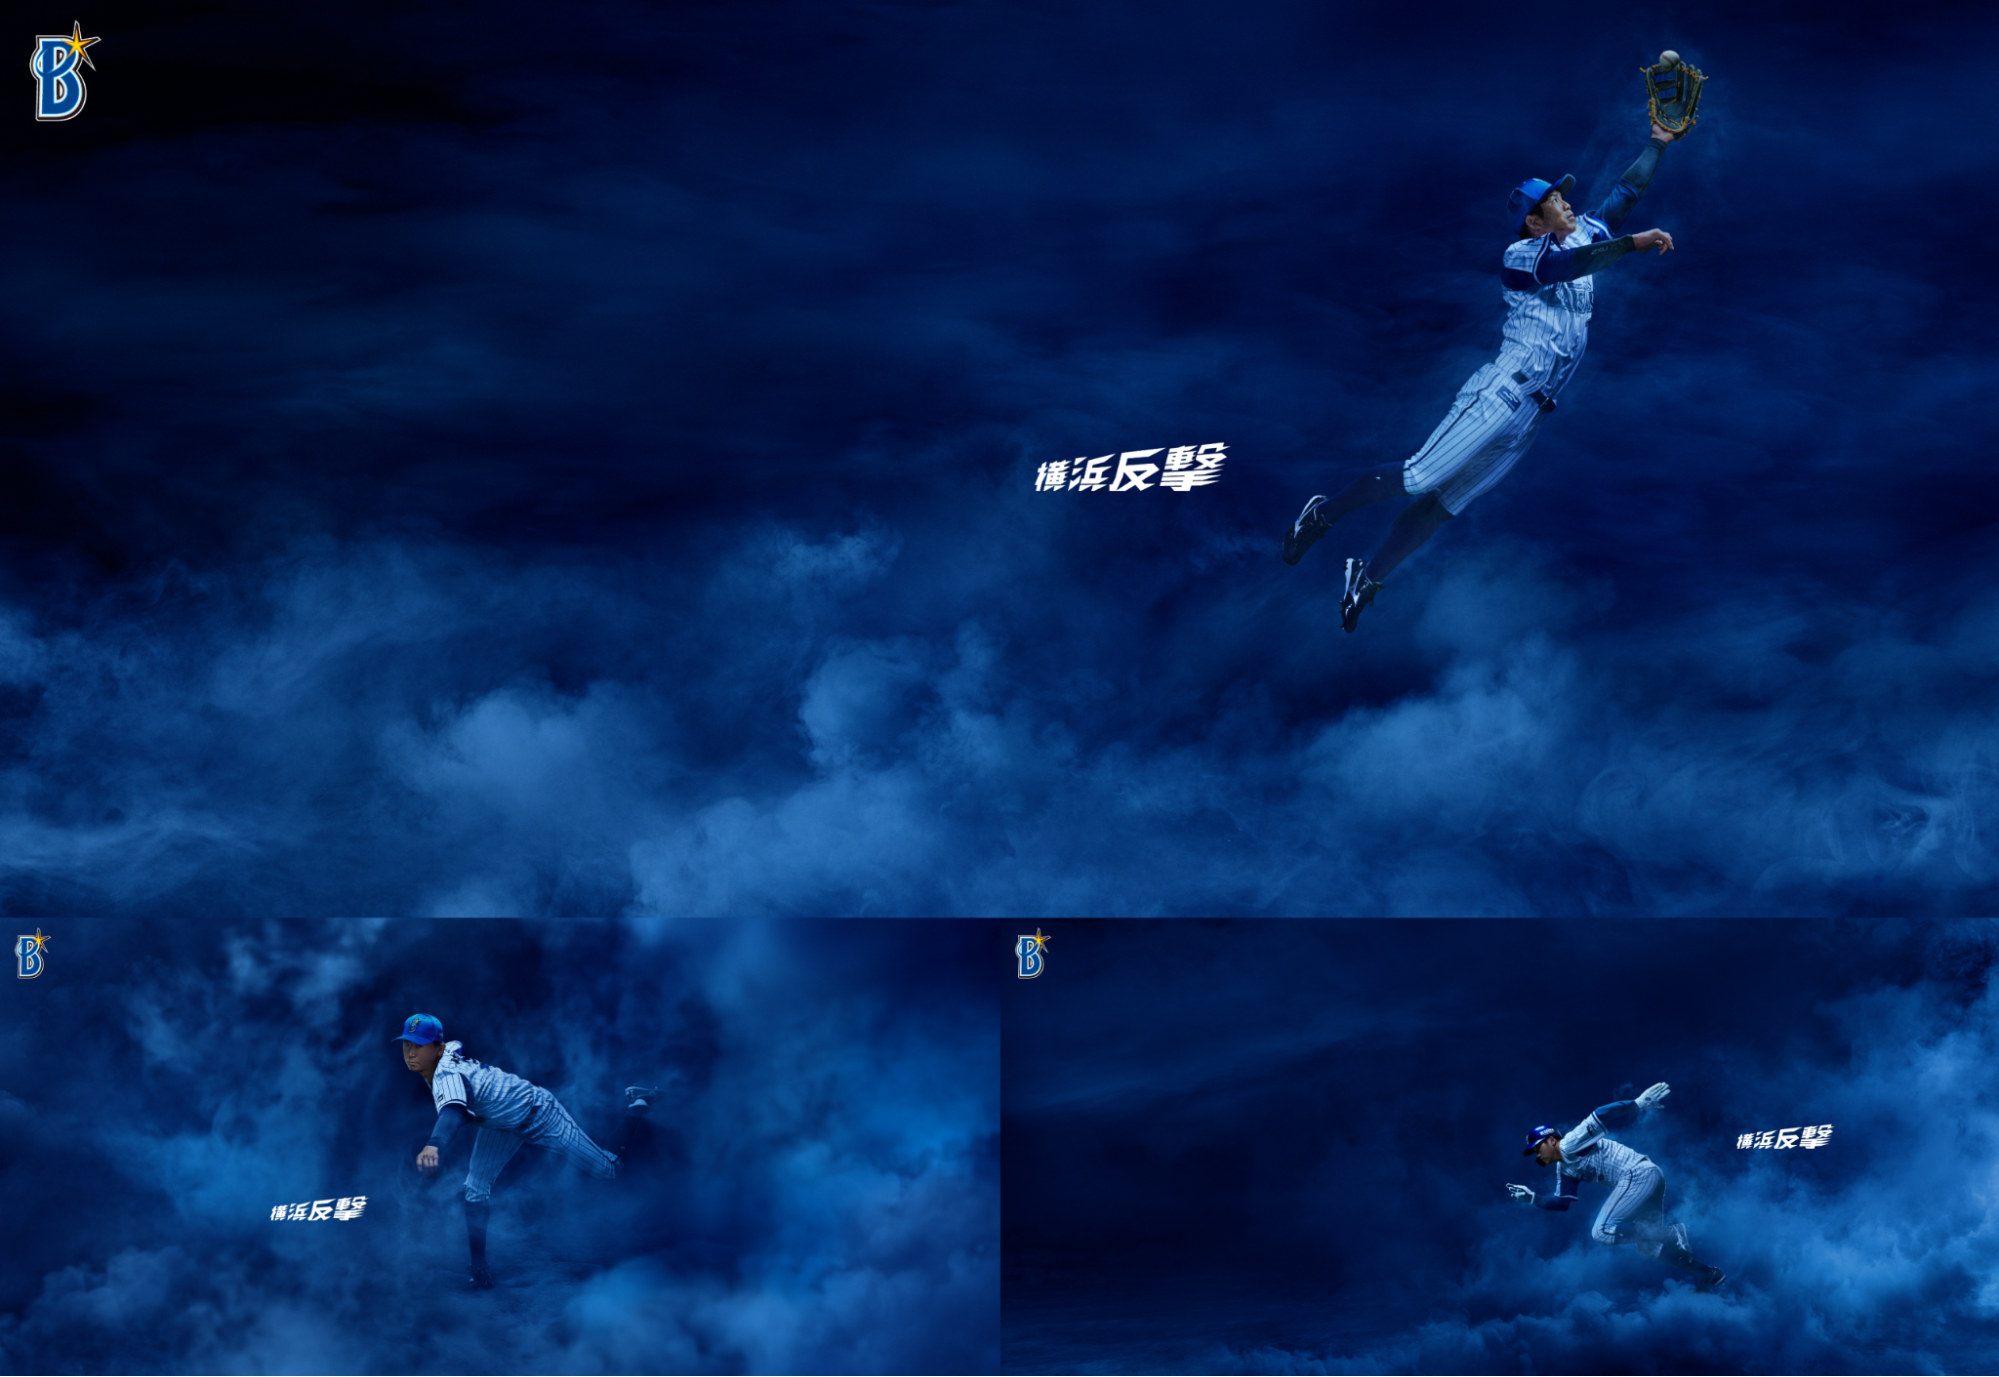 プレービジュアル vol.1が3枚並んだ画像。投げる・打つといったプレイヤーの動きとともに煙がデザインされており、「横浜反撃」と一枚ずつに書かれている。